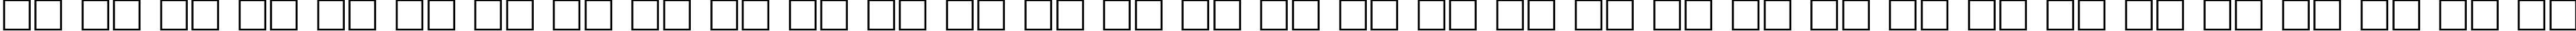 Пример написания русского алфавита шрифтом Denmark Regular